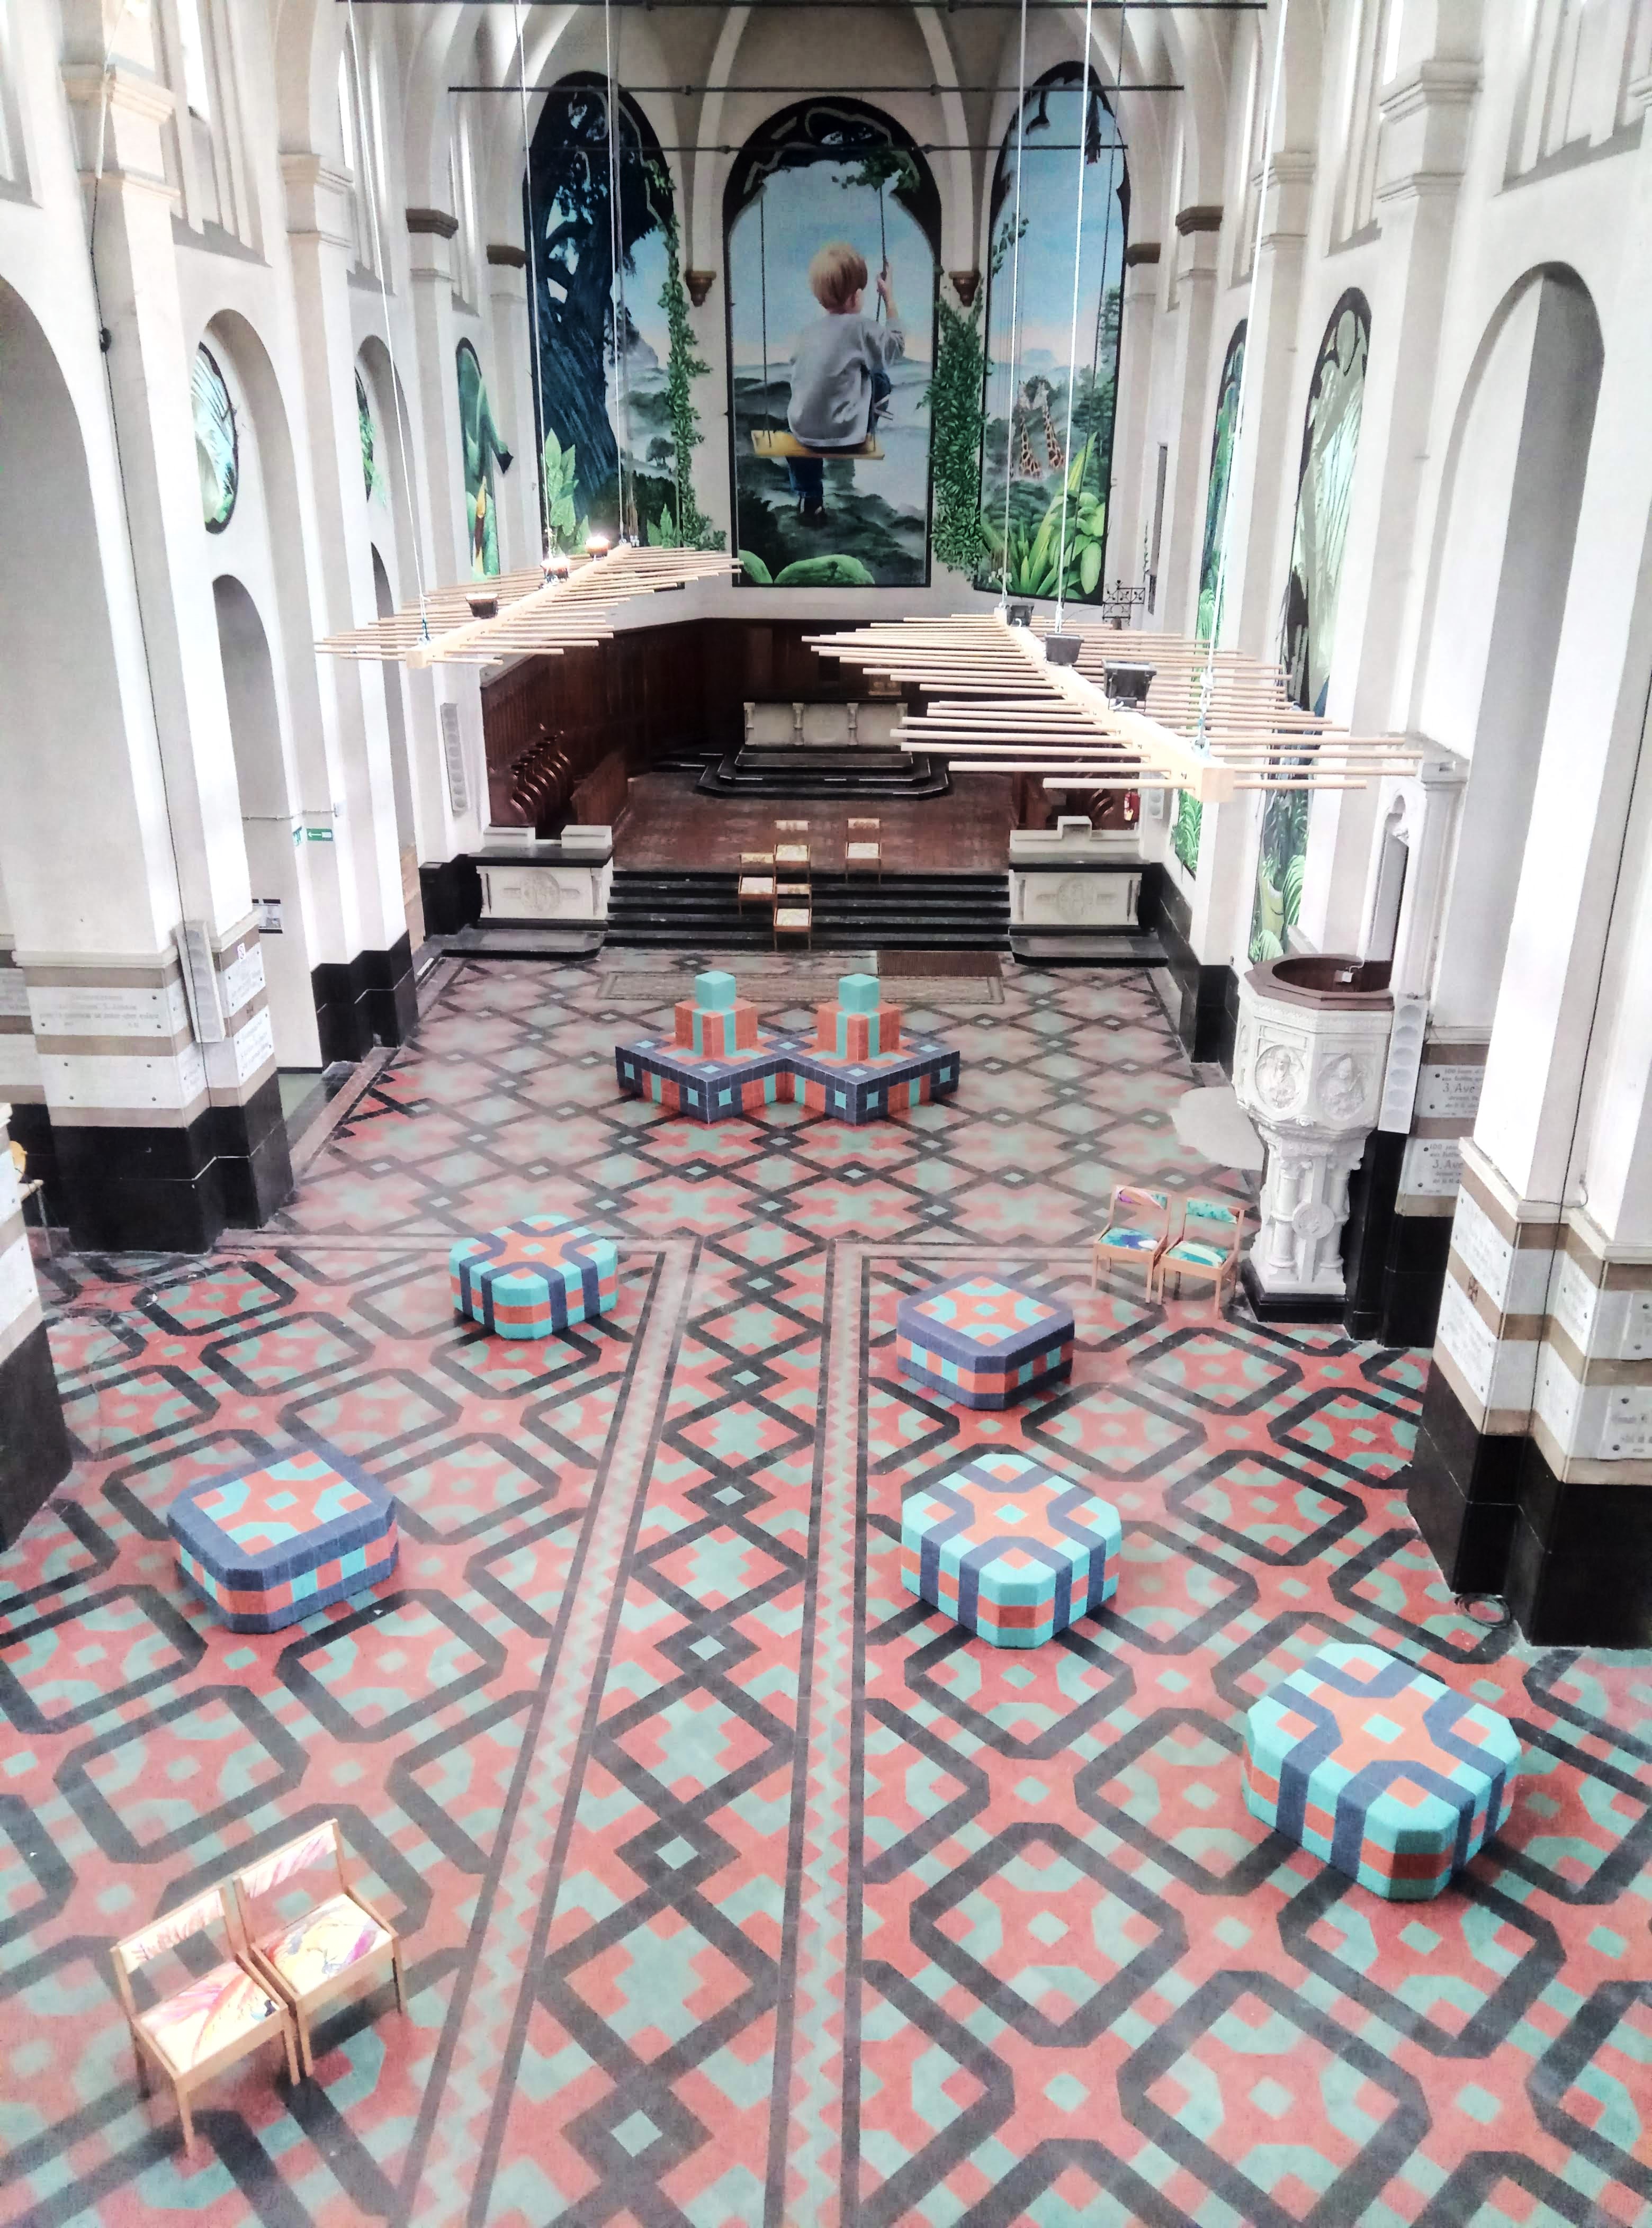 Paterkeskerk van bovenaf, poefjes met een zelfde patroon als de vloer